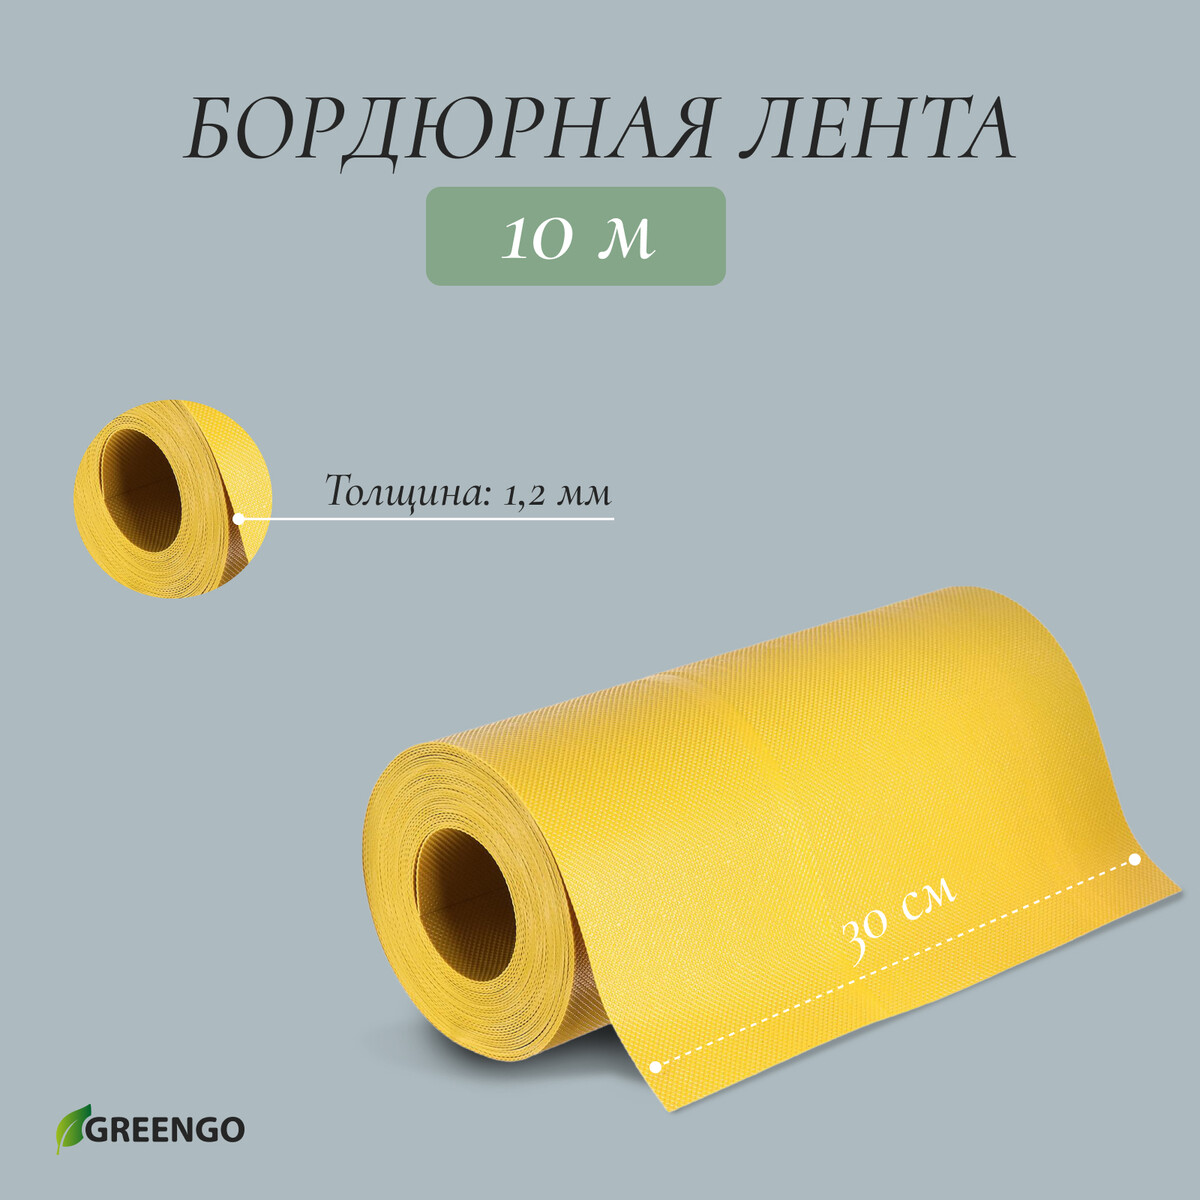 Лента бордюрная, 0.3 × 10 м, толщина 1.2 мм, пластиковая, желтая, greengo лента бордюрная 0 1 × 10 м толщина 1 2 мм пластиковая коричневая greengo